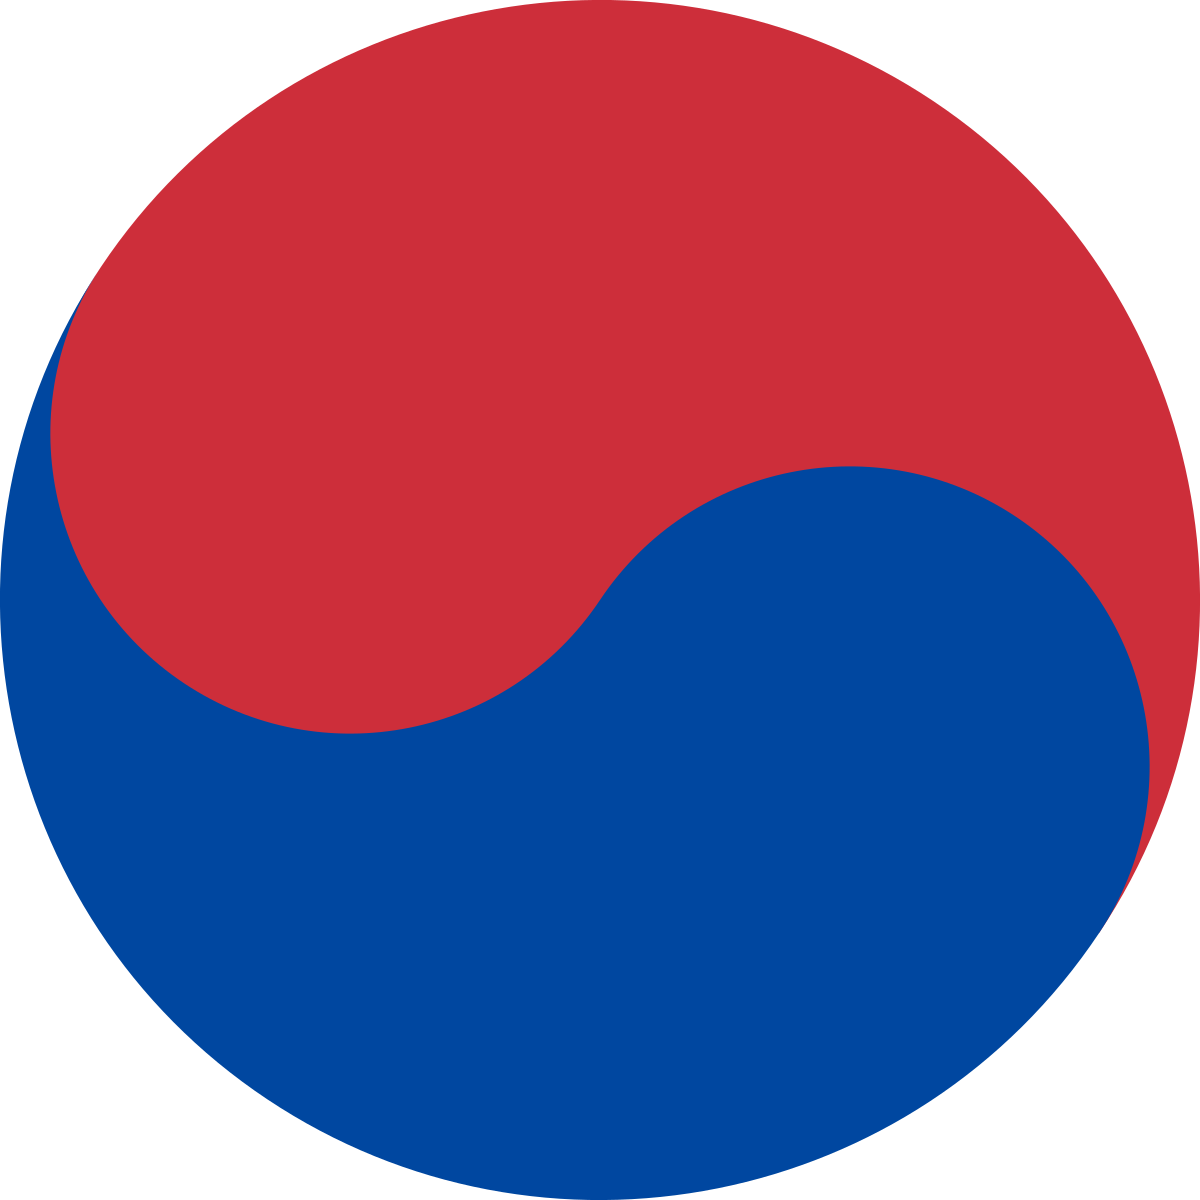 Seoul Flag PNG HD Quality